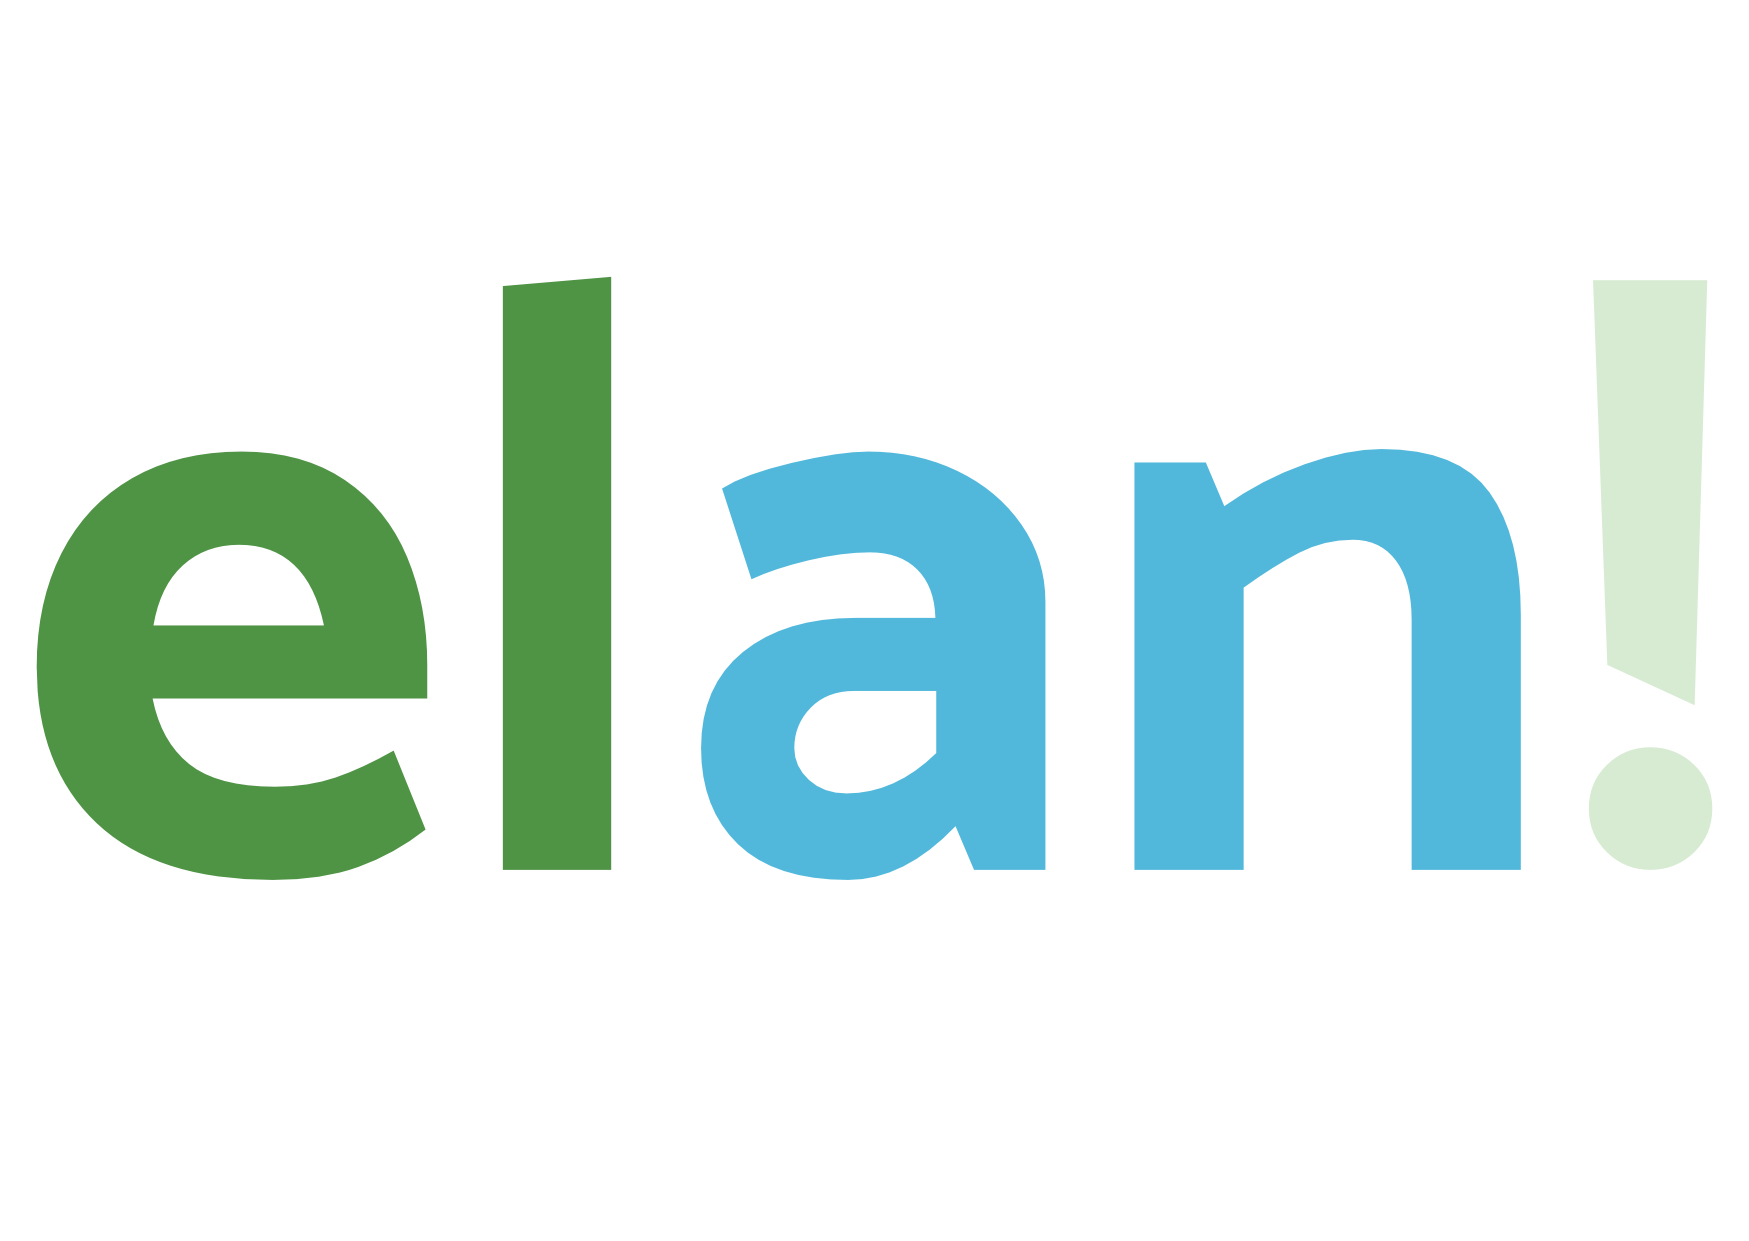 Das Logo des Projekts "Entwaldungsfreie Lieferketten": die Buchstaben "elan" gefolgt von einem Ausrufezeichen.